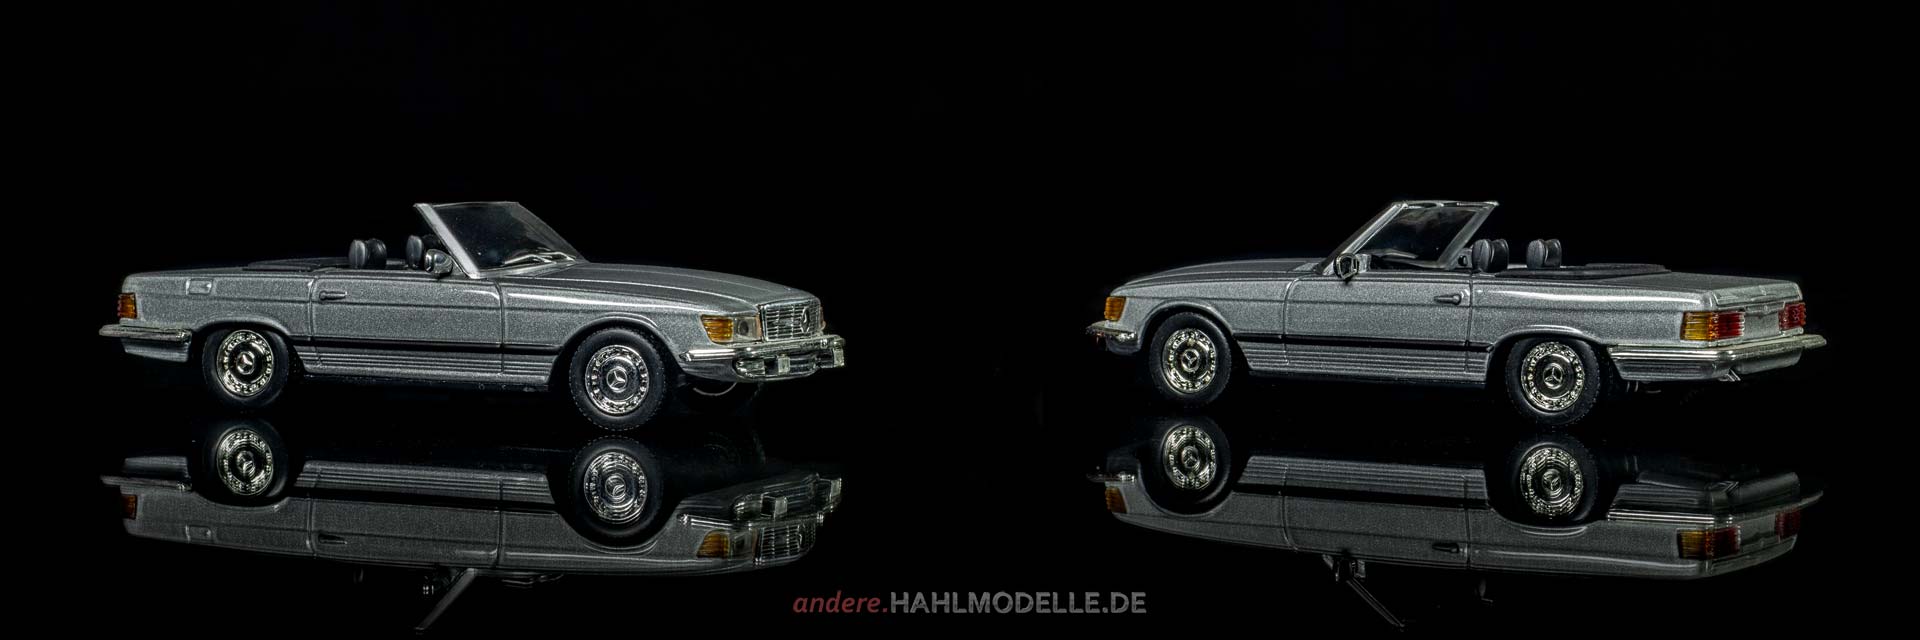 Mercedes-Benz 350 SL (R 107) | Roadster | Ixo | www.andere.hahlmodelle.de